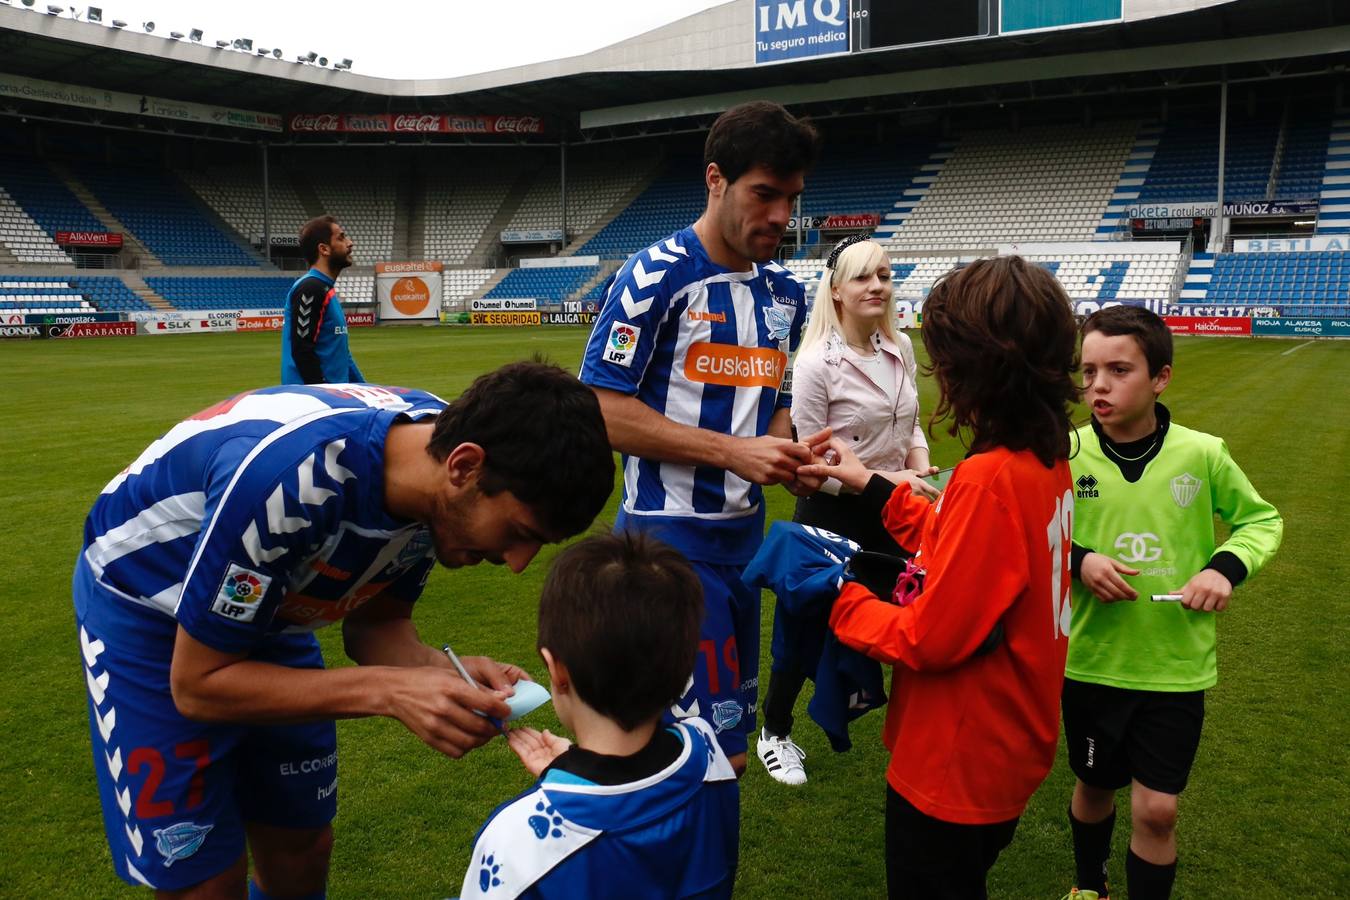 Los jugadores saludan y firman autógrafos a los niños